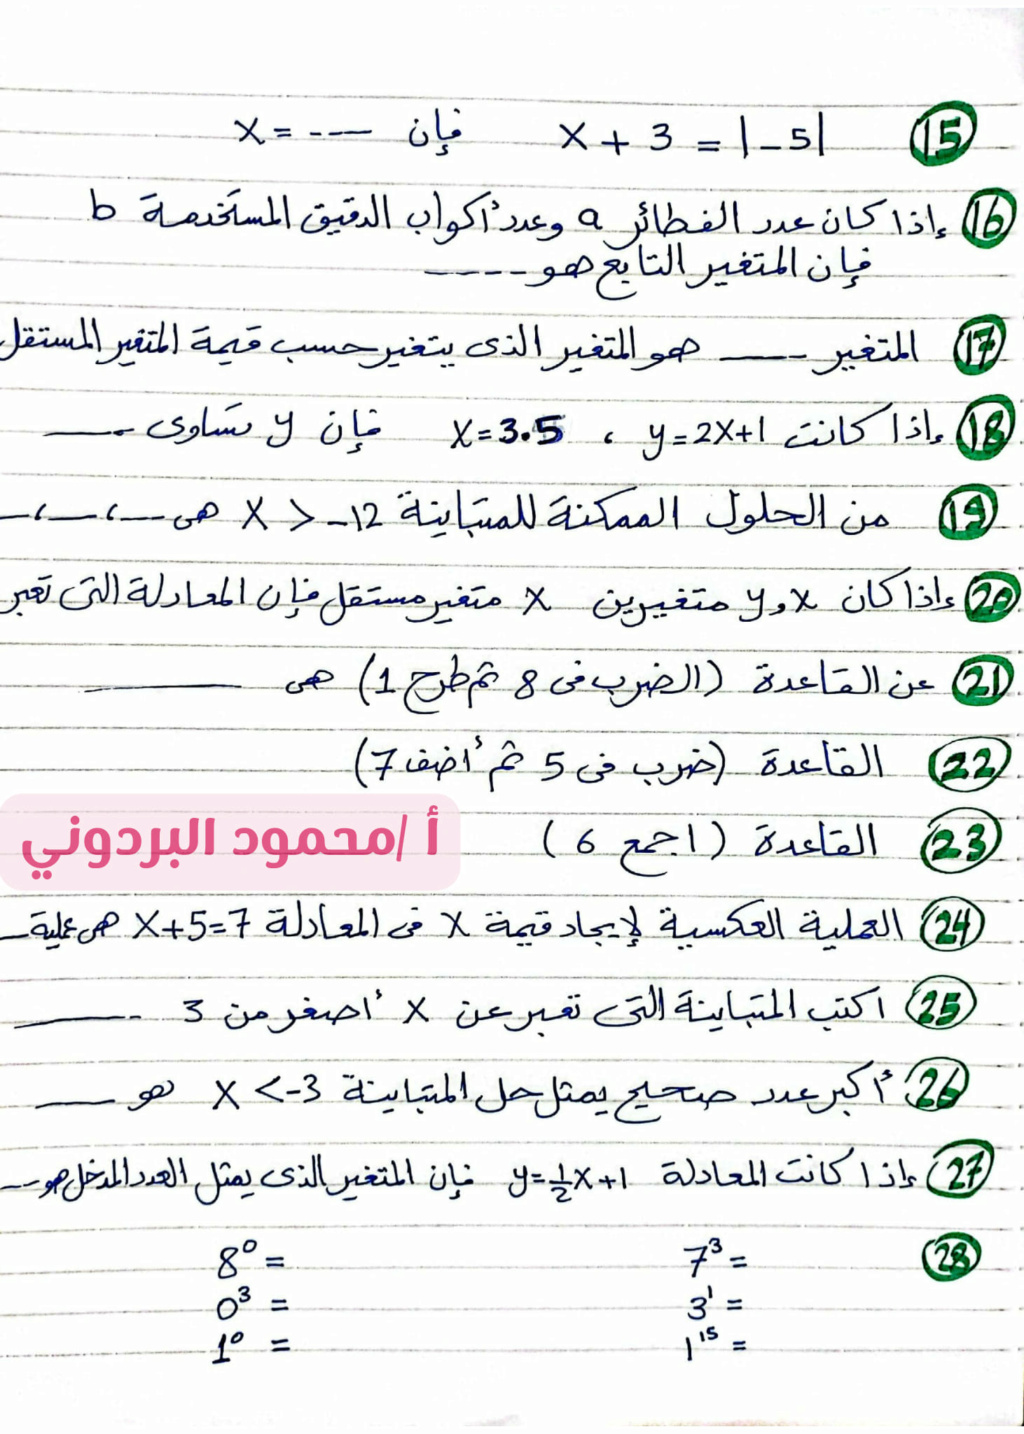  مراجعة شهر نوفمبر فى الرياضيات للصف السادس أ. محمود البردونى  5_img118